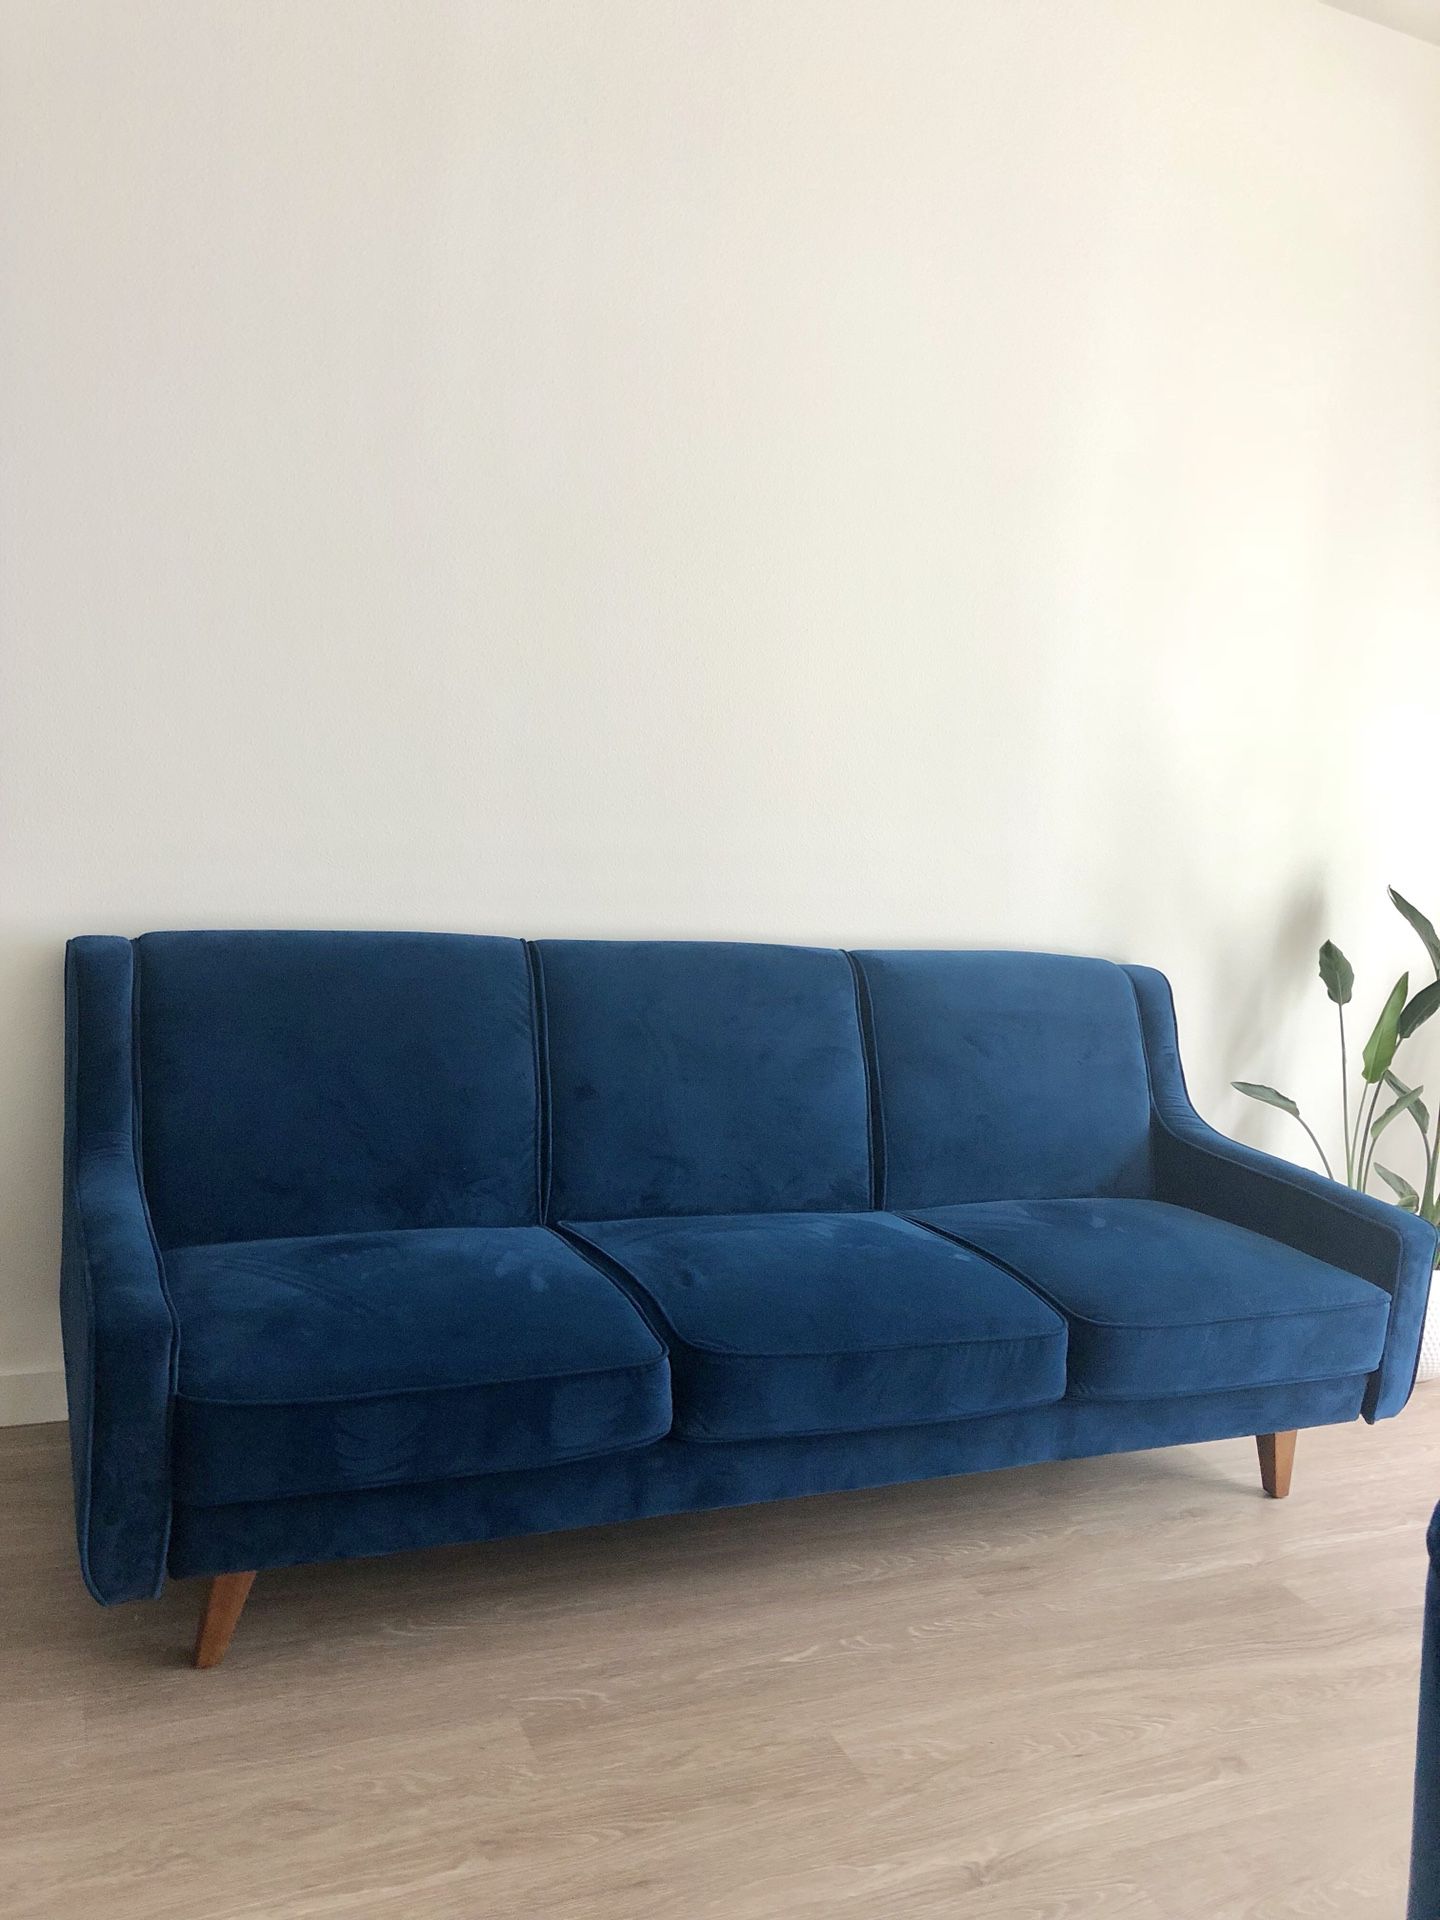 Velvet couch /sofa / royal blue